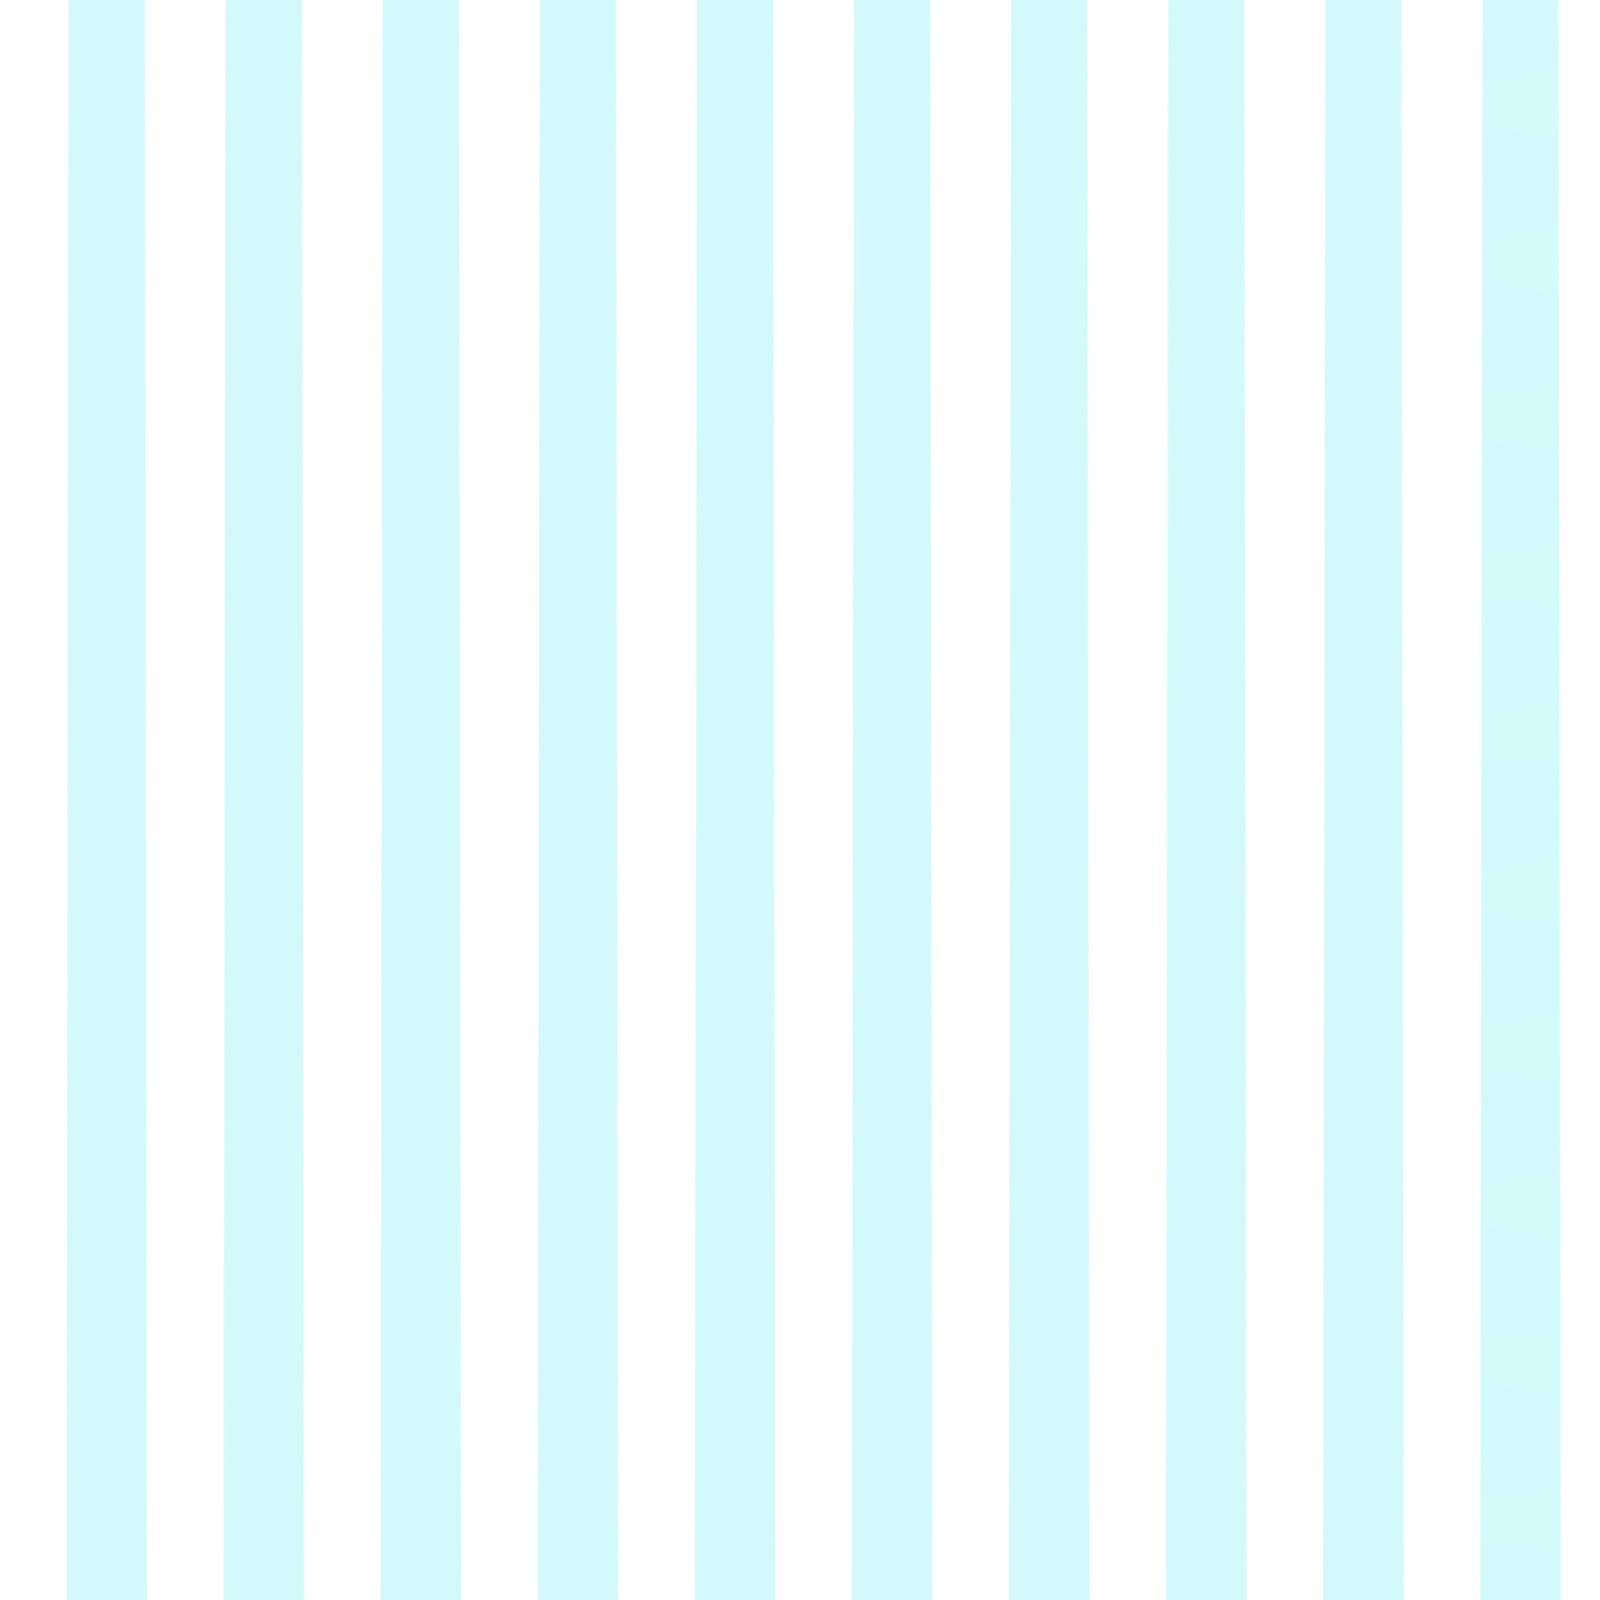 Amour Digi Scrapbook Paper Pastel Blue White Stripes